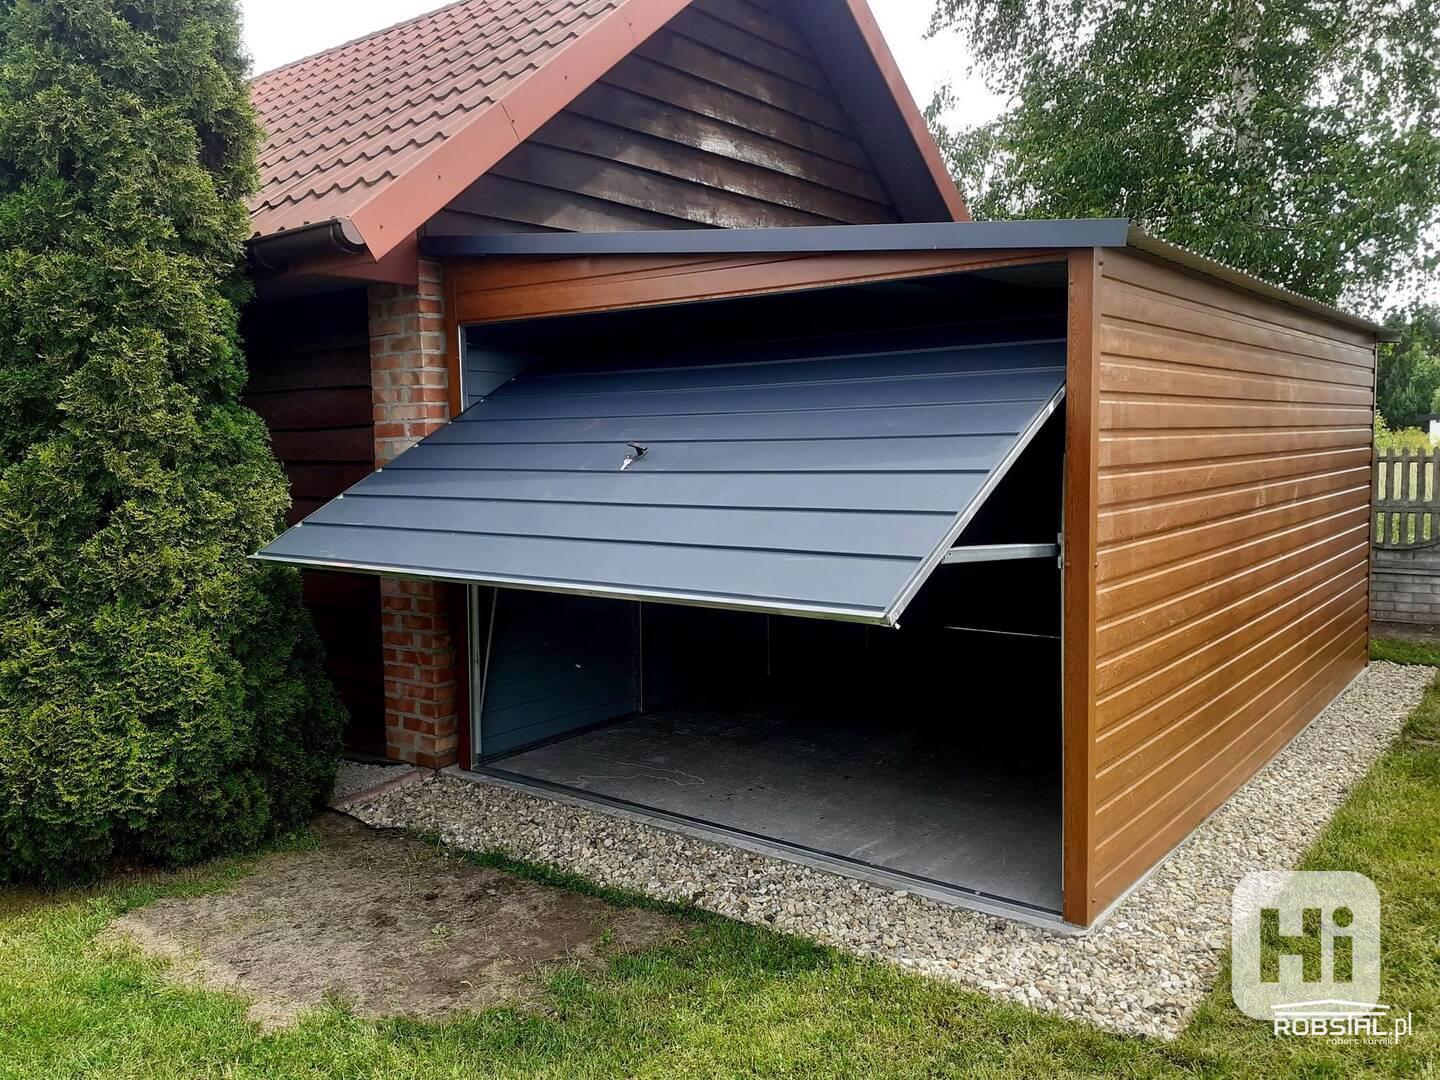 Plechová garáž 3x5m se střechou spádovanou do strany - foto 1